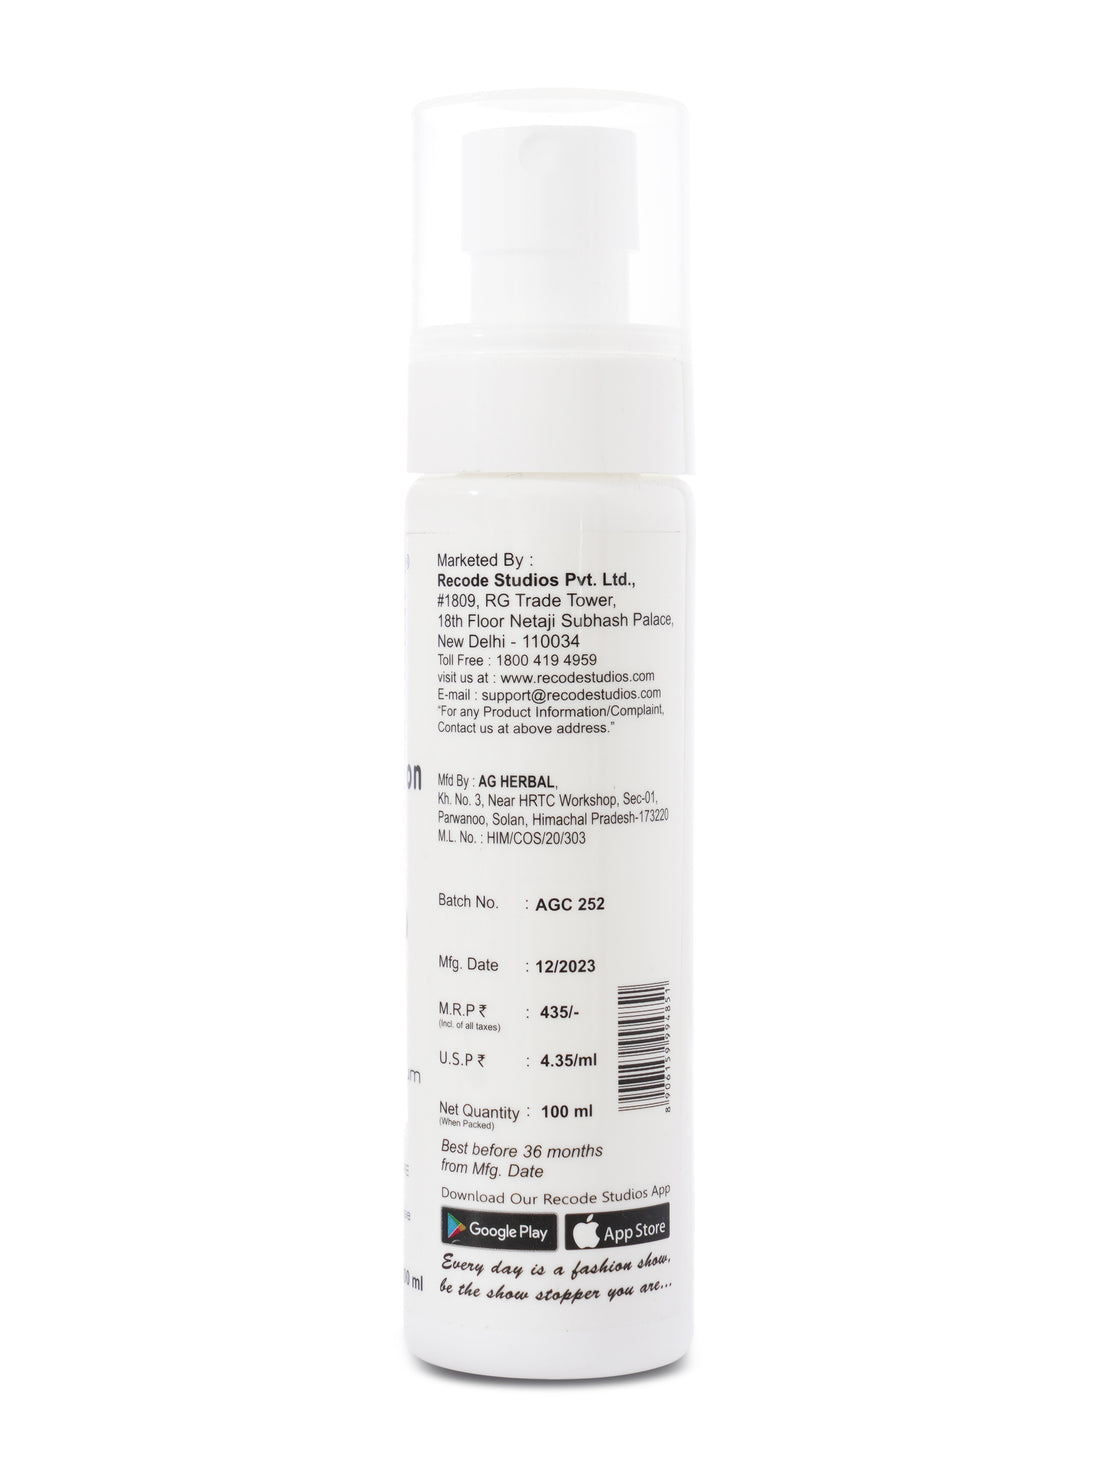 Recode Sun Protection Face Spray SPF50 PA+++ - 100ml